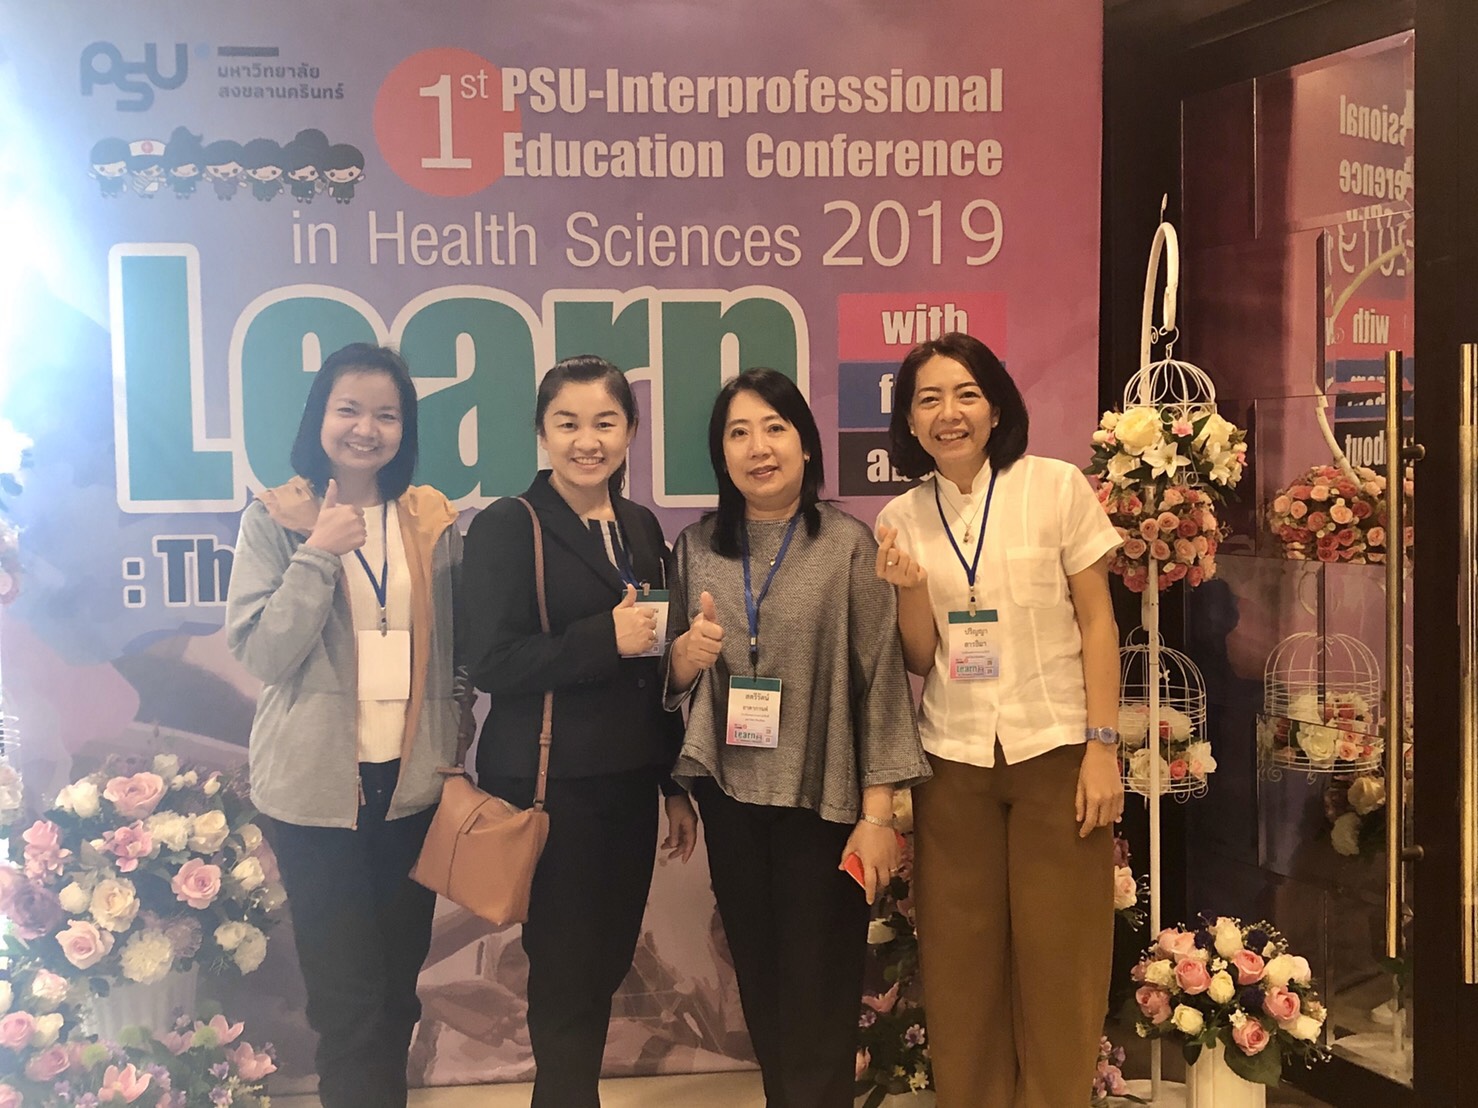 รองผู้อำนวยการโรงเรียนพยาบาลรามาธิบดี ฝ่ายการศึกษาพยาบาลศาสตร์ ร่วมบรรยาย ในงานประชุมวิชาการ PSU-Interprofessional Education Conference in Health Sciences 2019